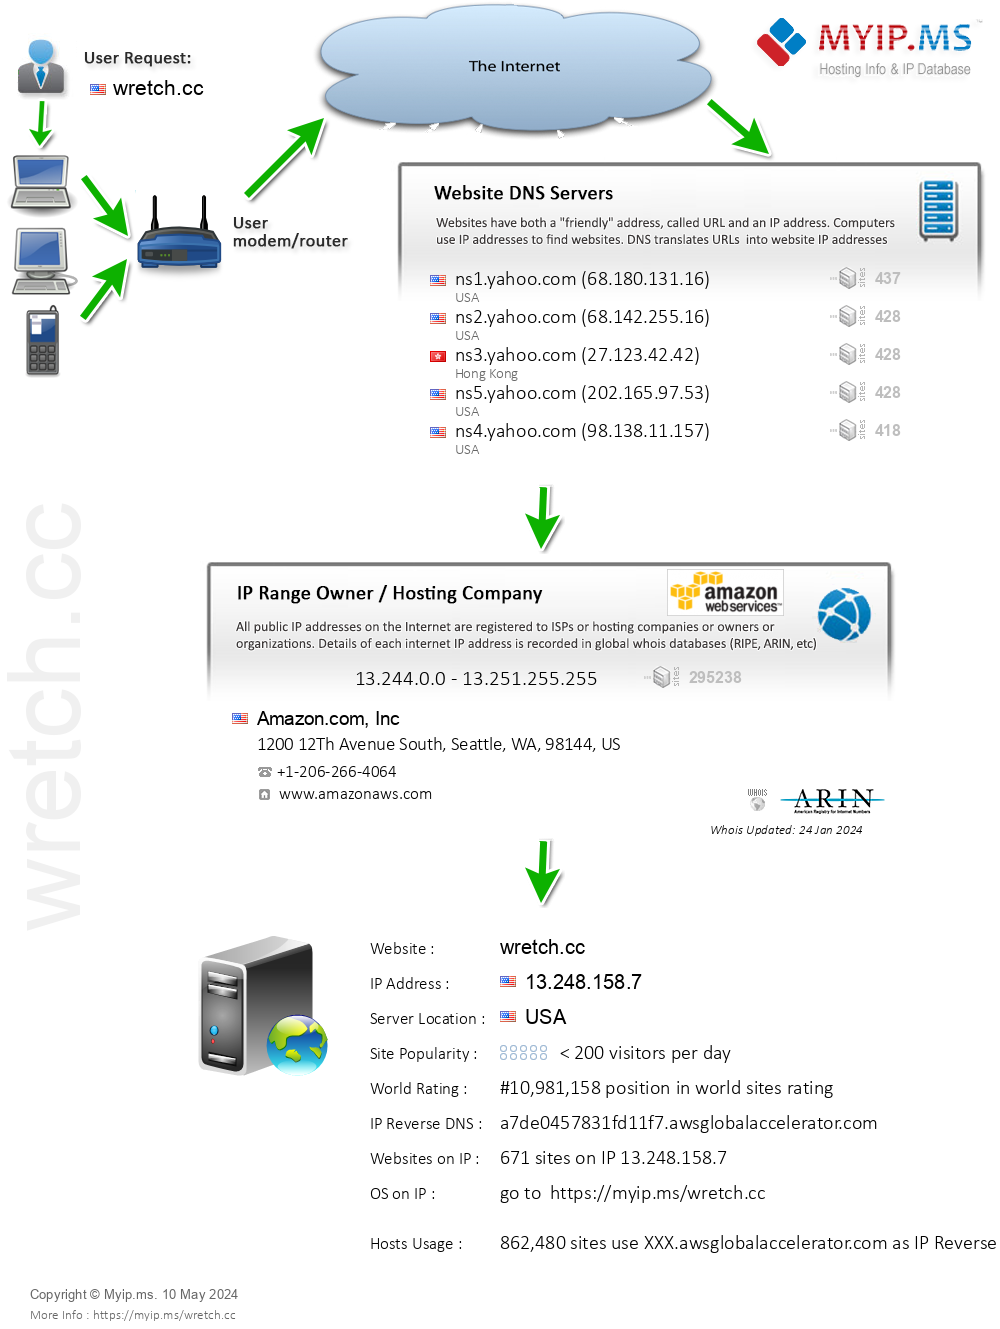 Wretch.cc - Website Hosting Visual IP Diagram